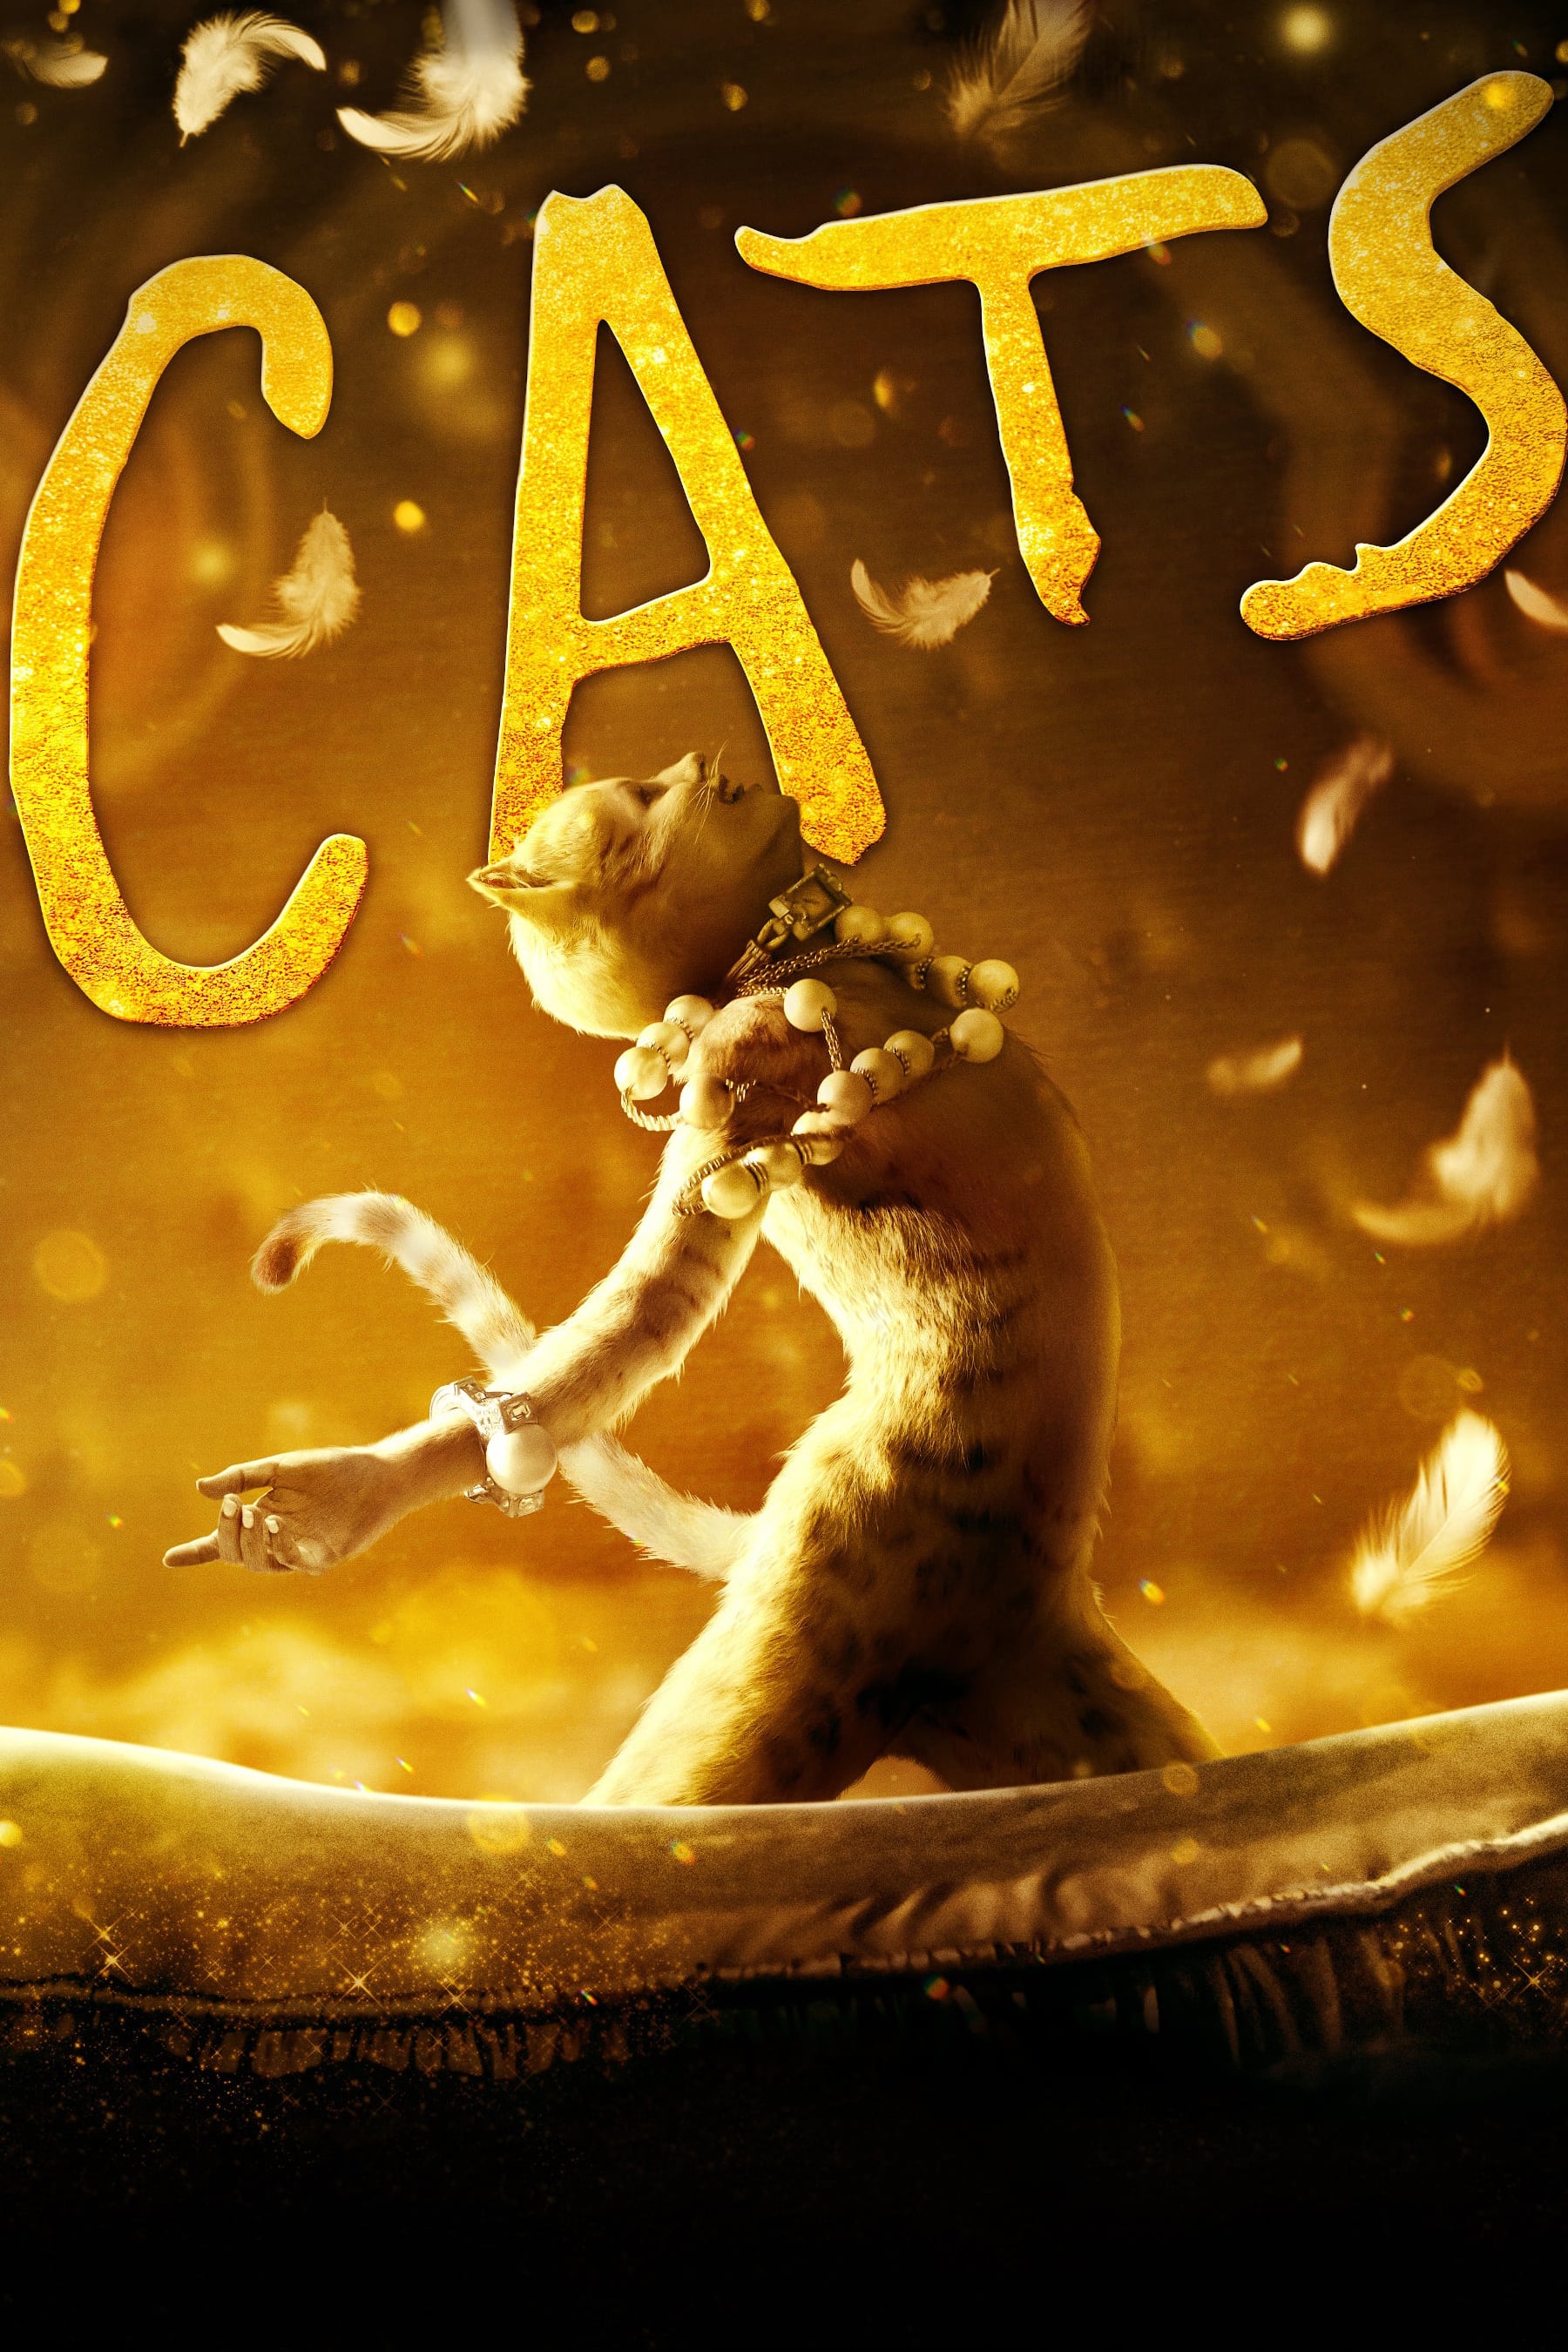 Caratula de CATS (CATS) 